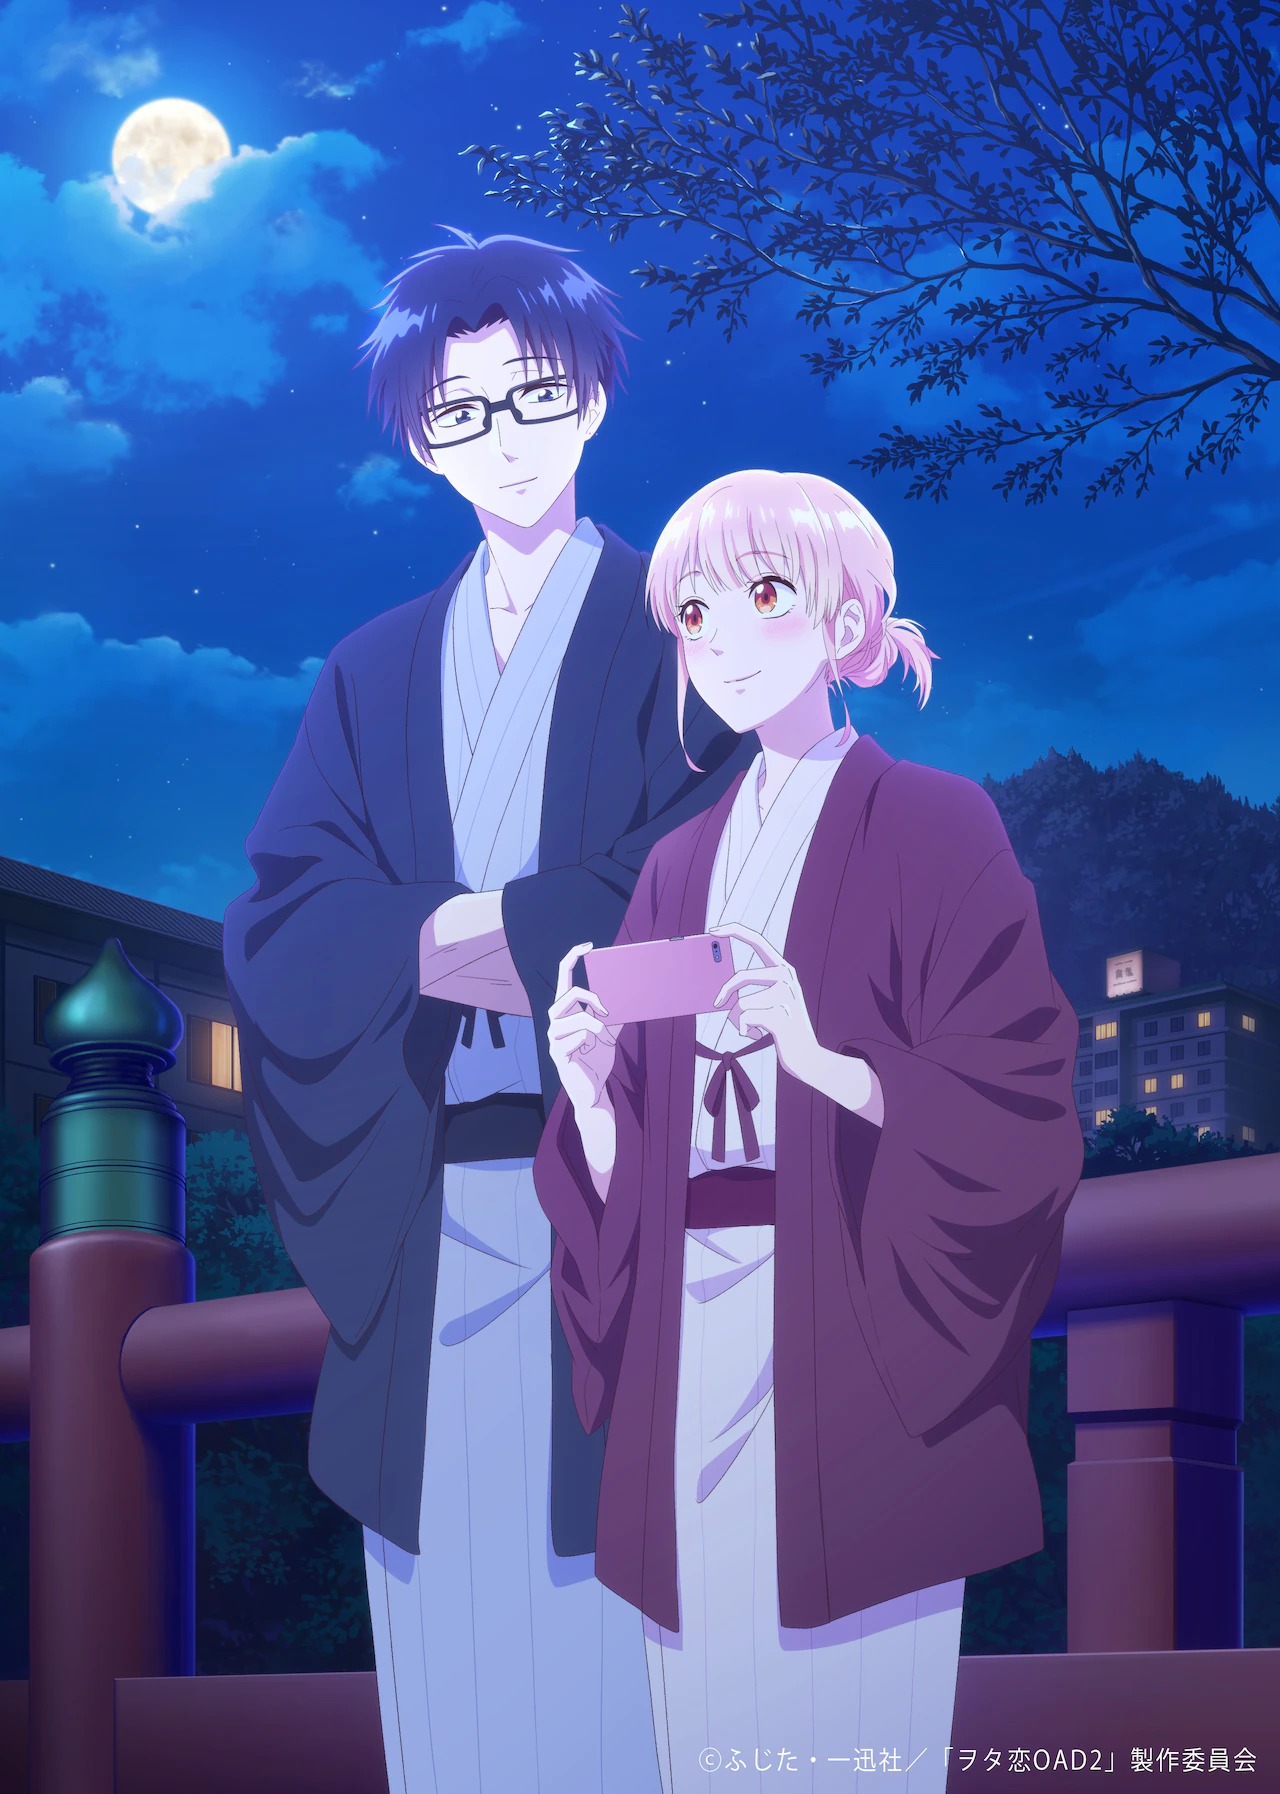 Ahora a esperar una segunda temporada uu #anime: Koi wa Sekai